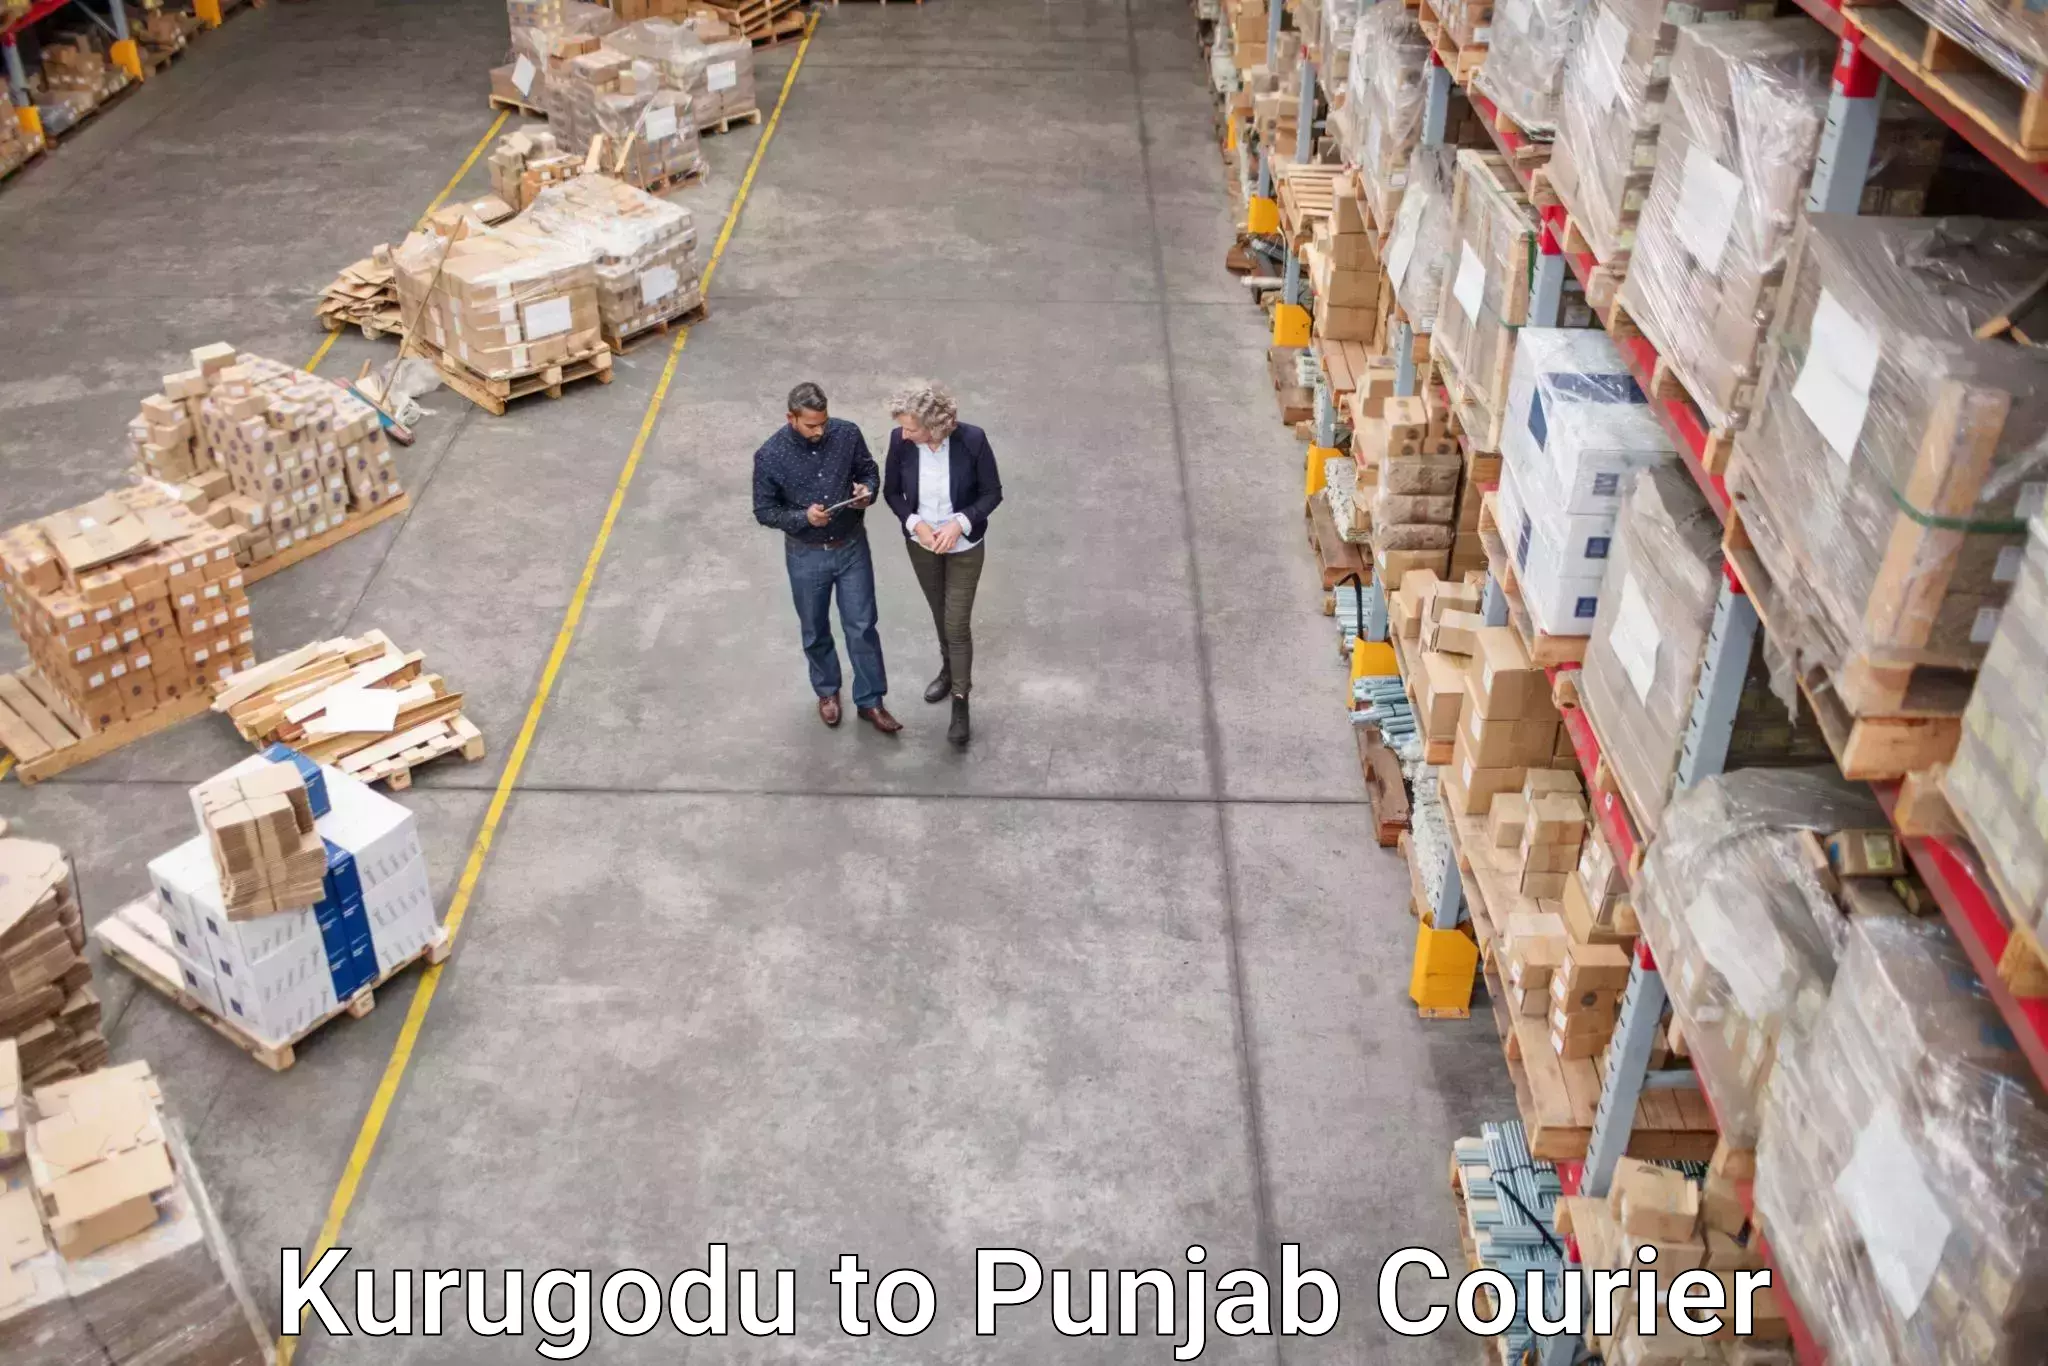 Urban courier service Kurugodu to Central University of Punjab Bathinda